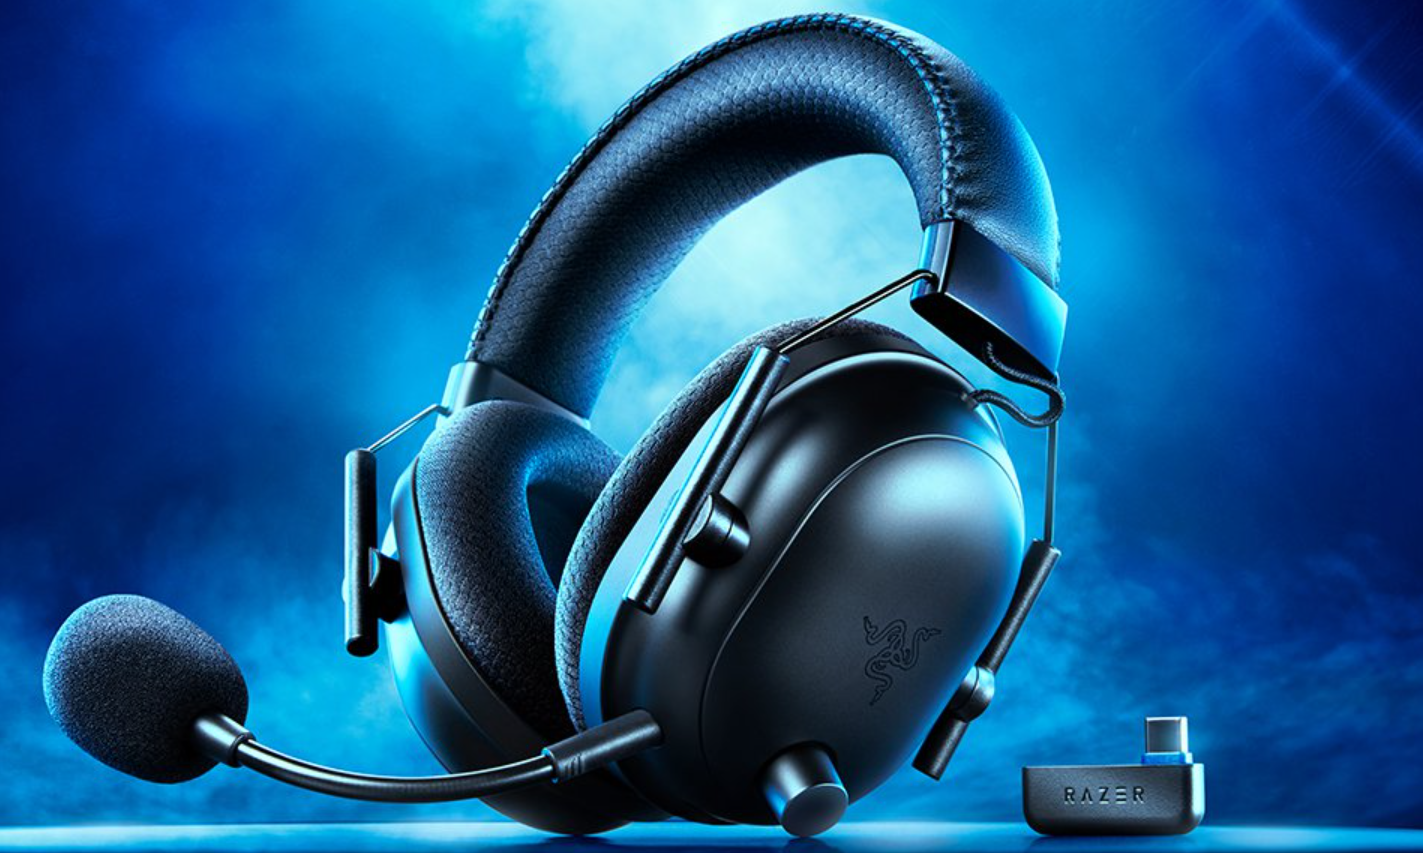 Blackshark V2 Pro PS5 : le meilleur casque gaming pour la console ? Notre Test !